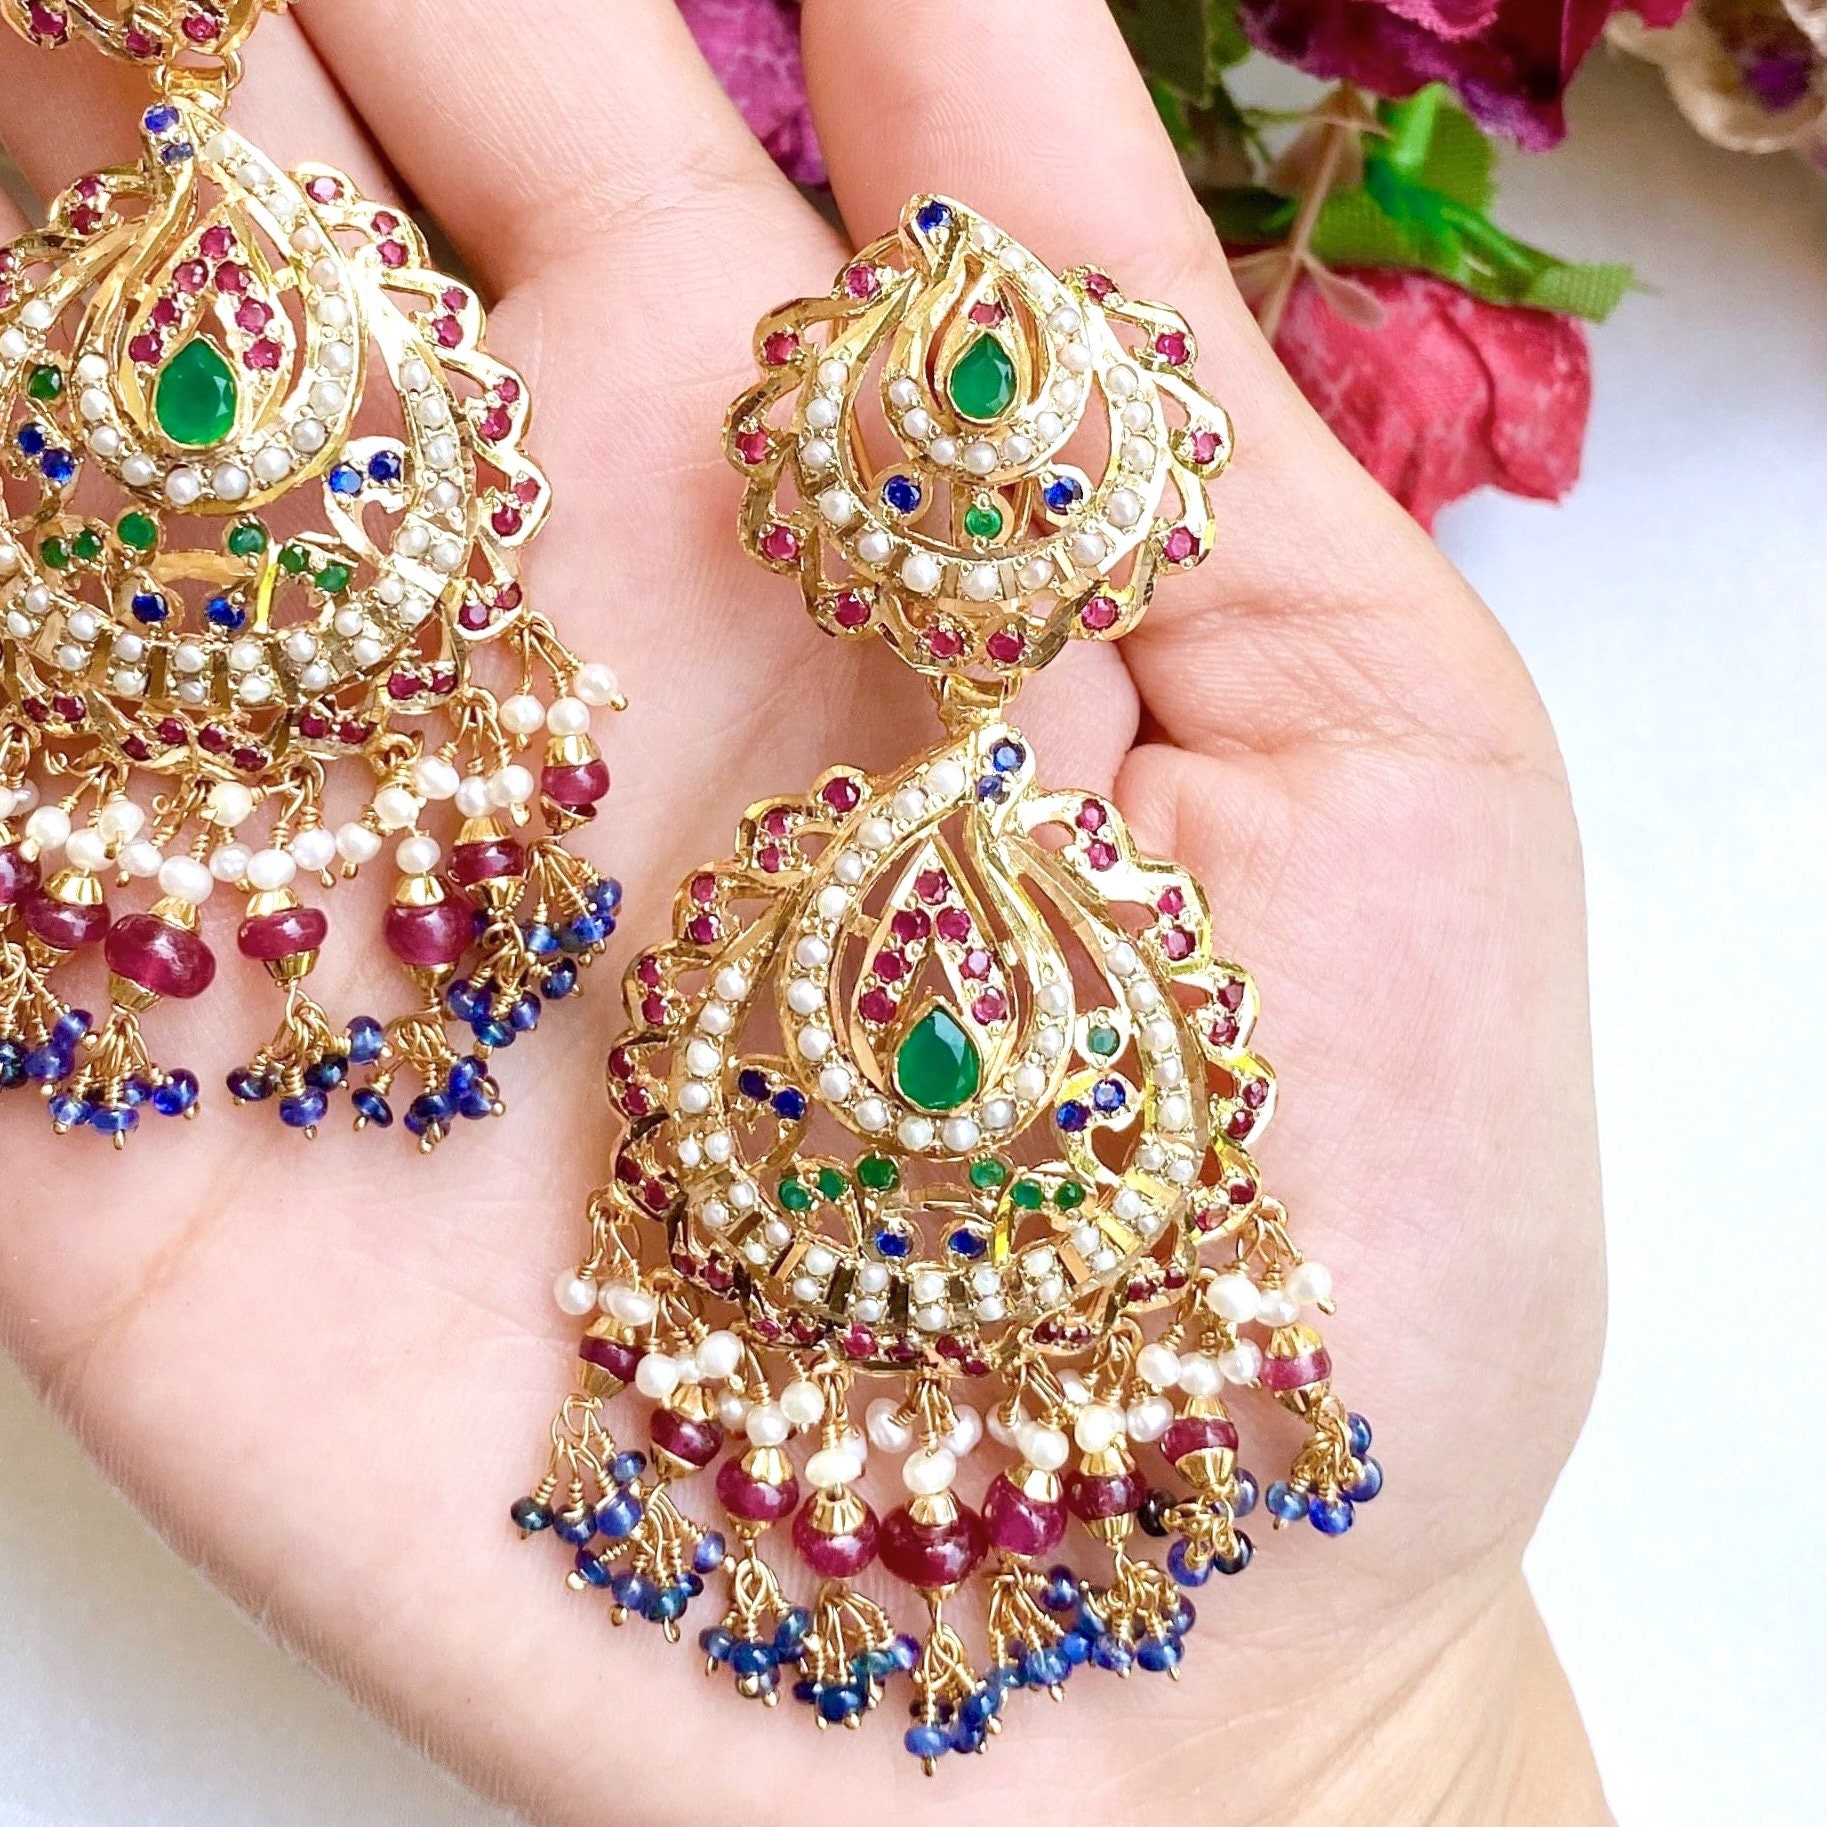 Priyaasi Multicolor Peacock Triple Jhumka Gold-Plated Earrings